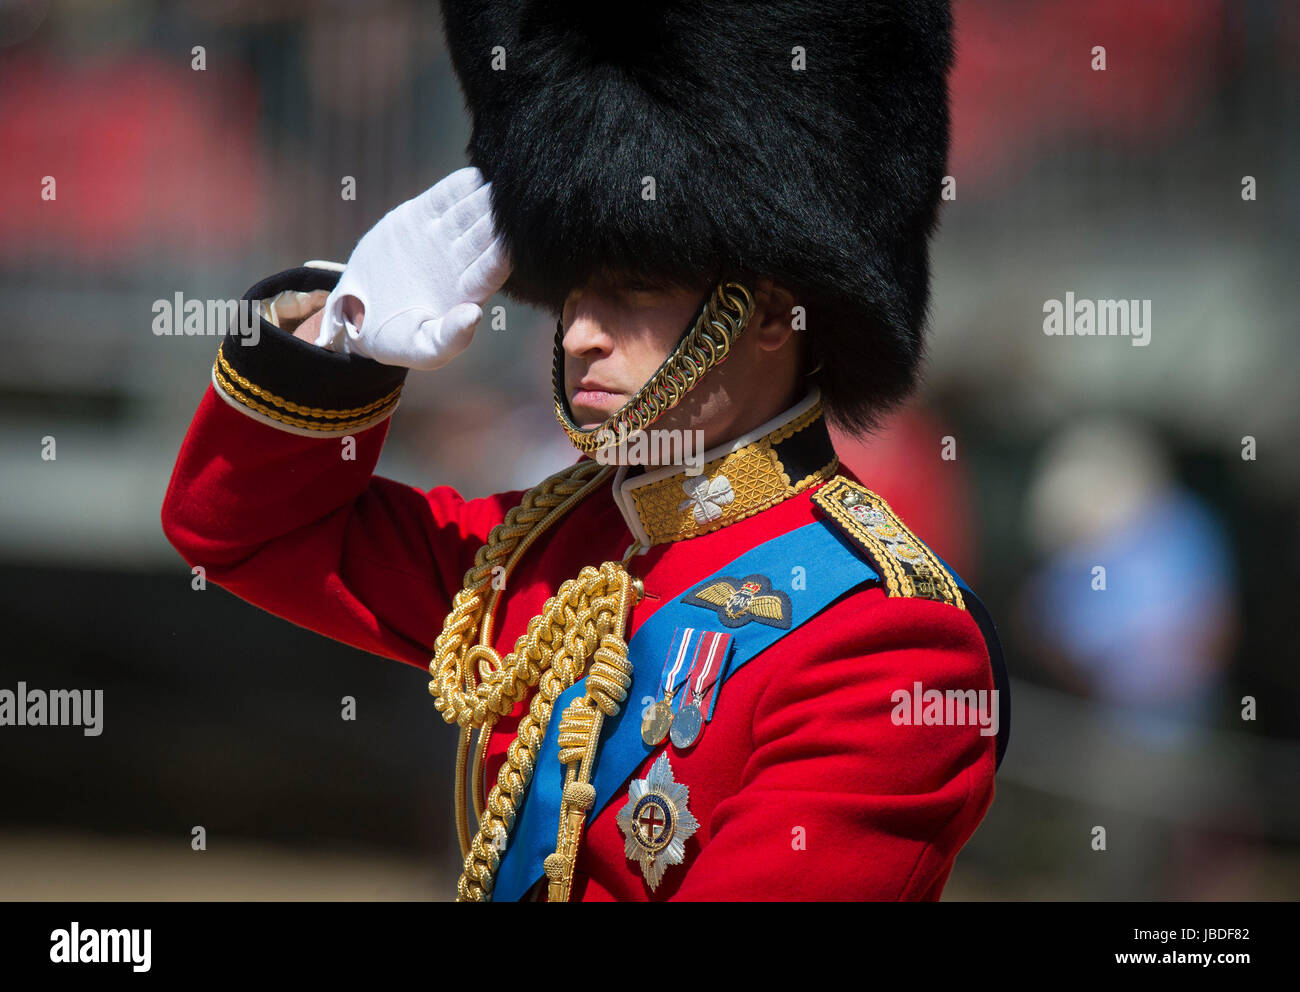 Der Herzog von Cambridge, Oberst der Irish Guards Parade über die Mall im Zentrum von London während der Oberst Review, die Generalprobe der Trooping die Farbe, die Königin jährlichen Geburtstag Parade. Stockfoto